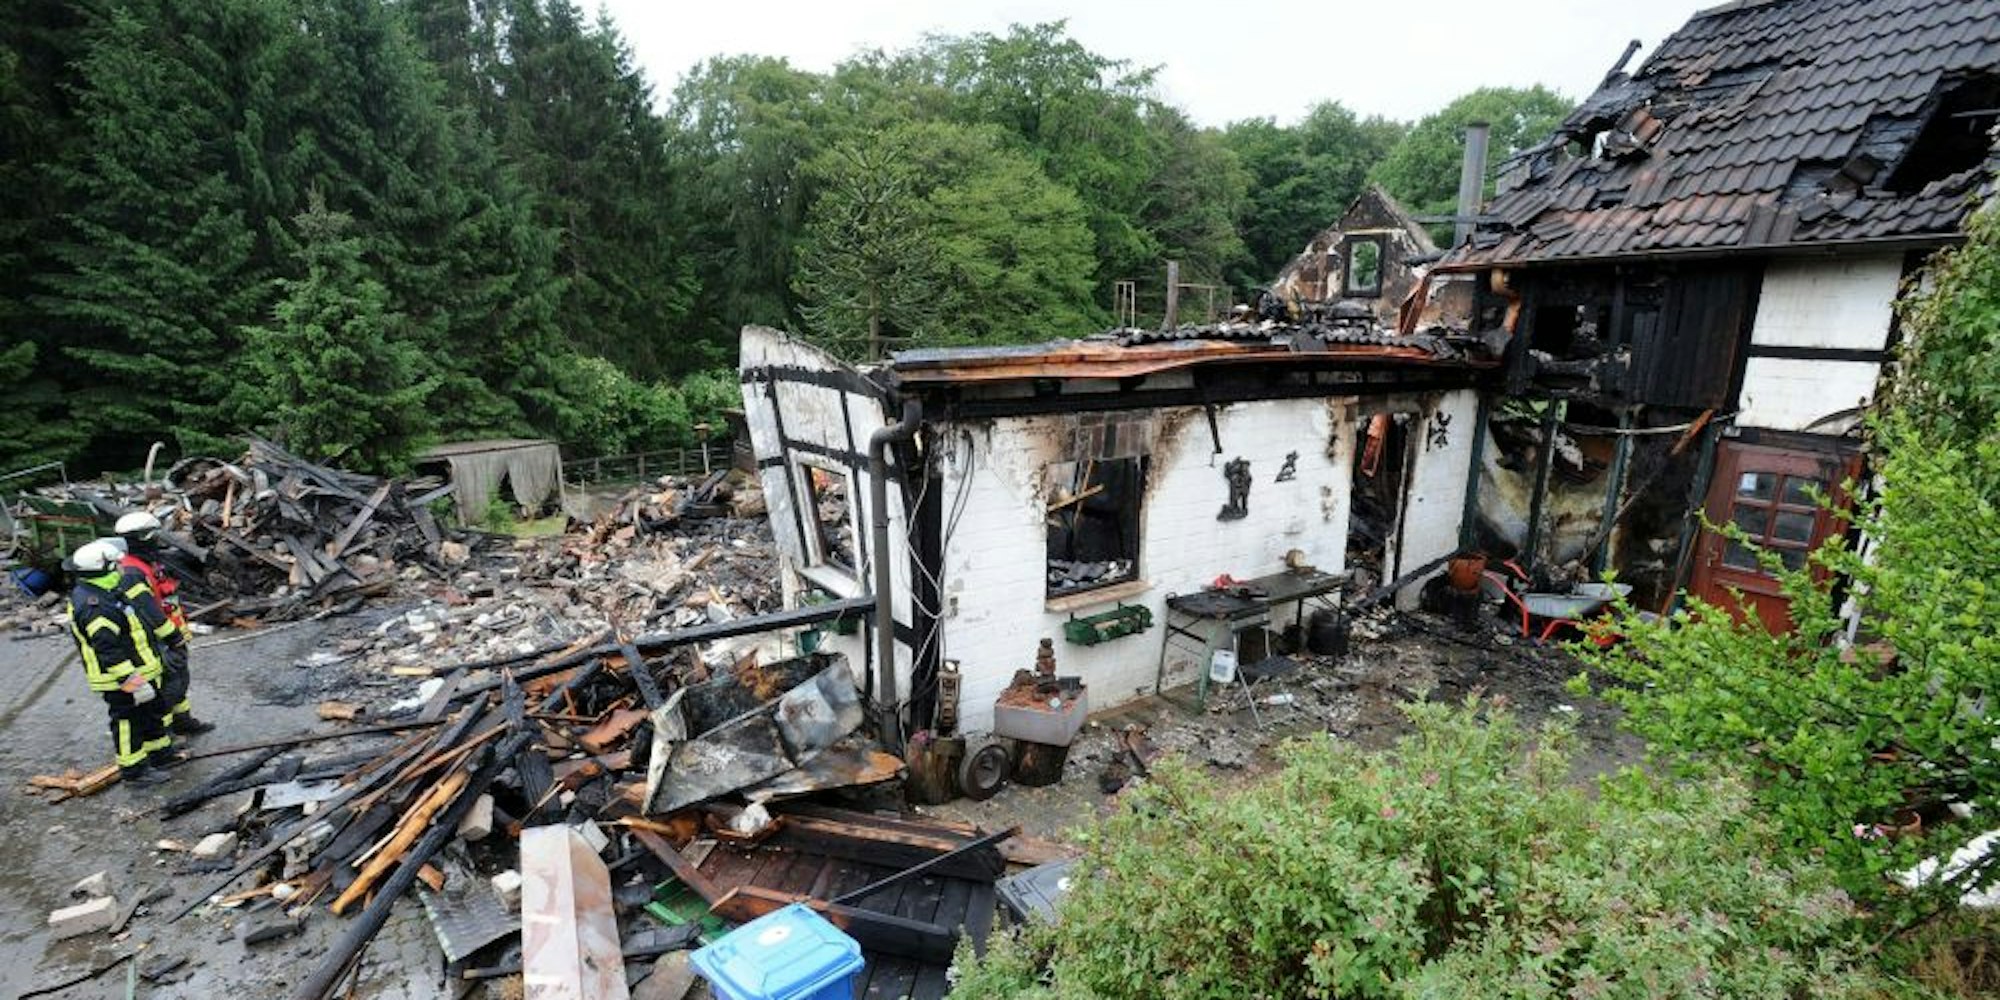 Komplett niedergebrannt und eingestürzt ist in der Nacht das Wohnhaus aus Fachwerk des Gehöfts in Krähwinkel.